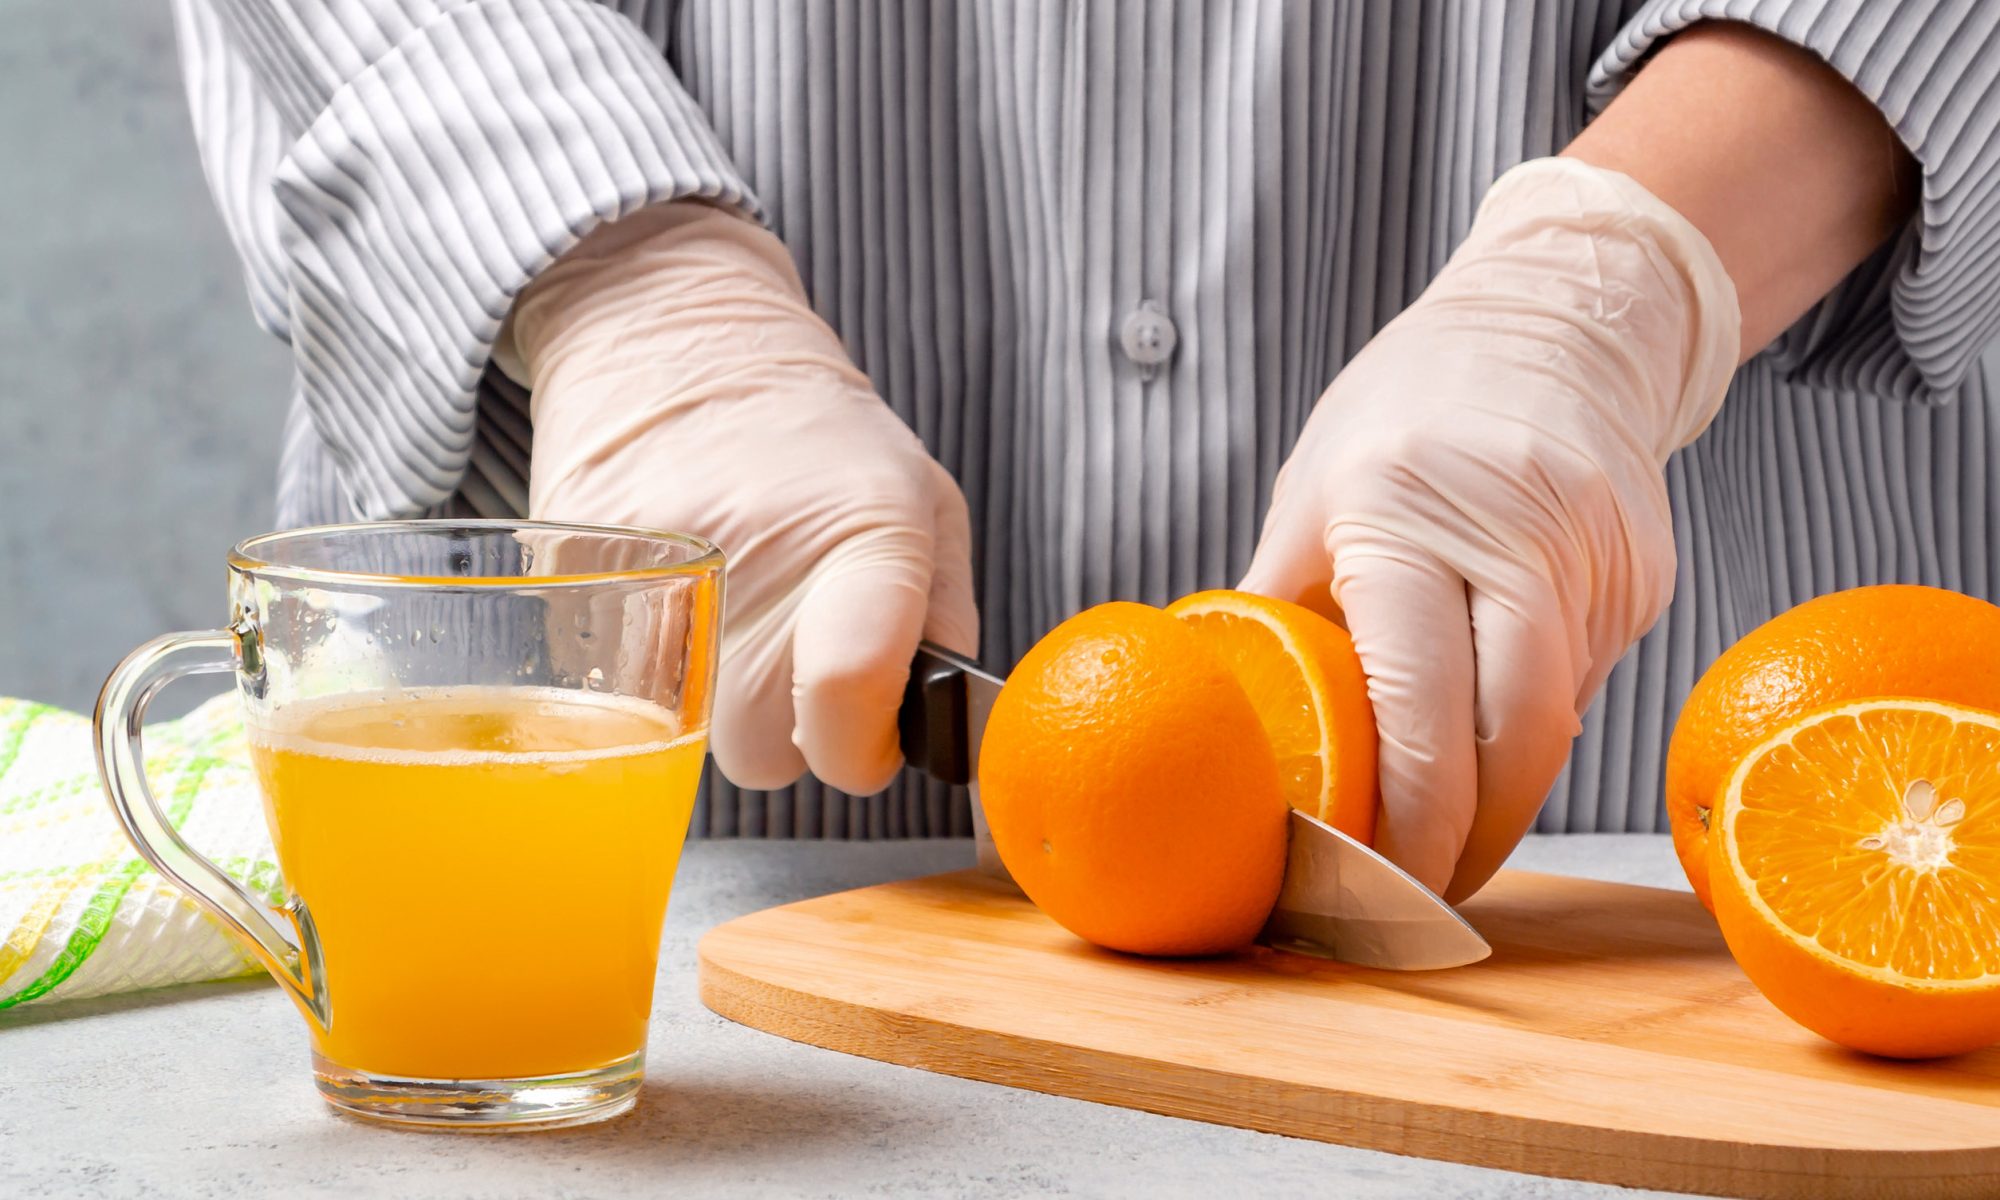 Лимонад в домашних условиях из апельсинов